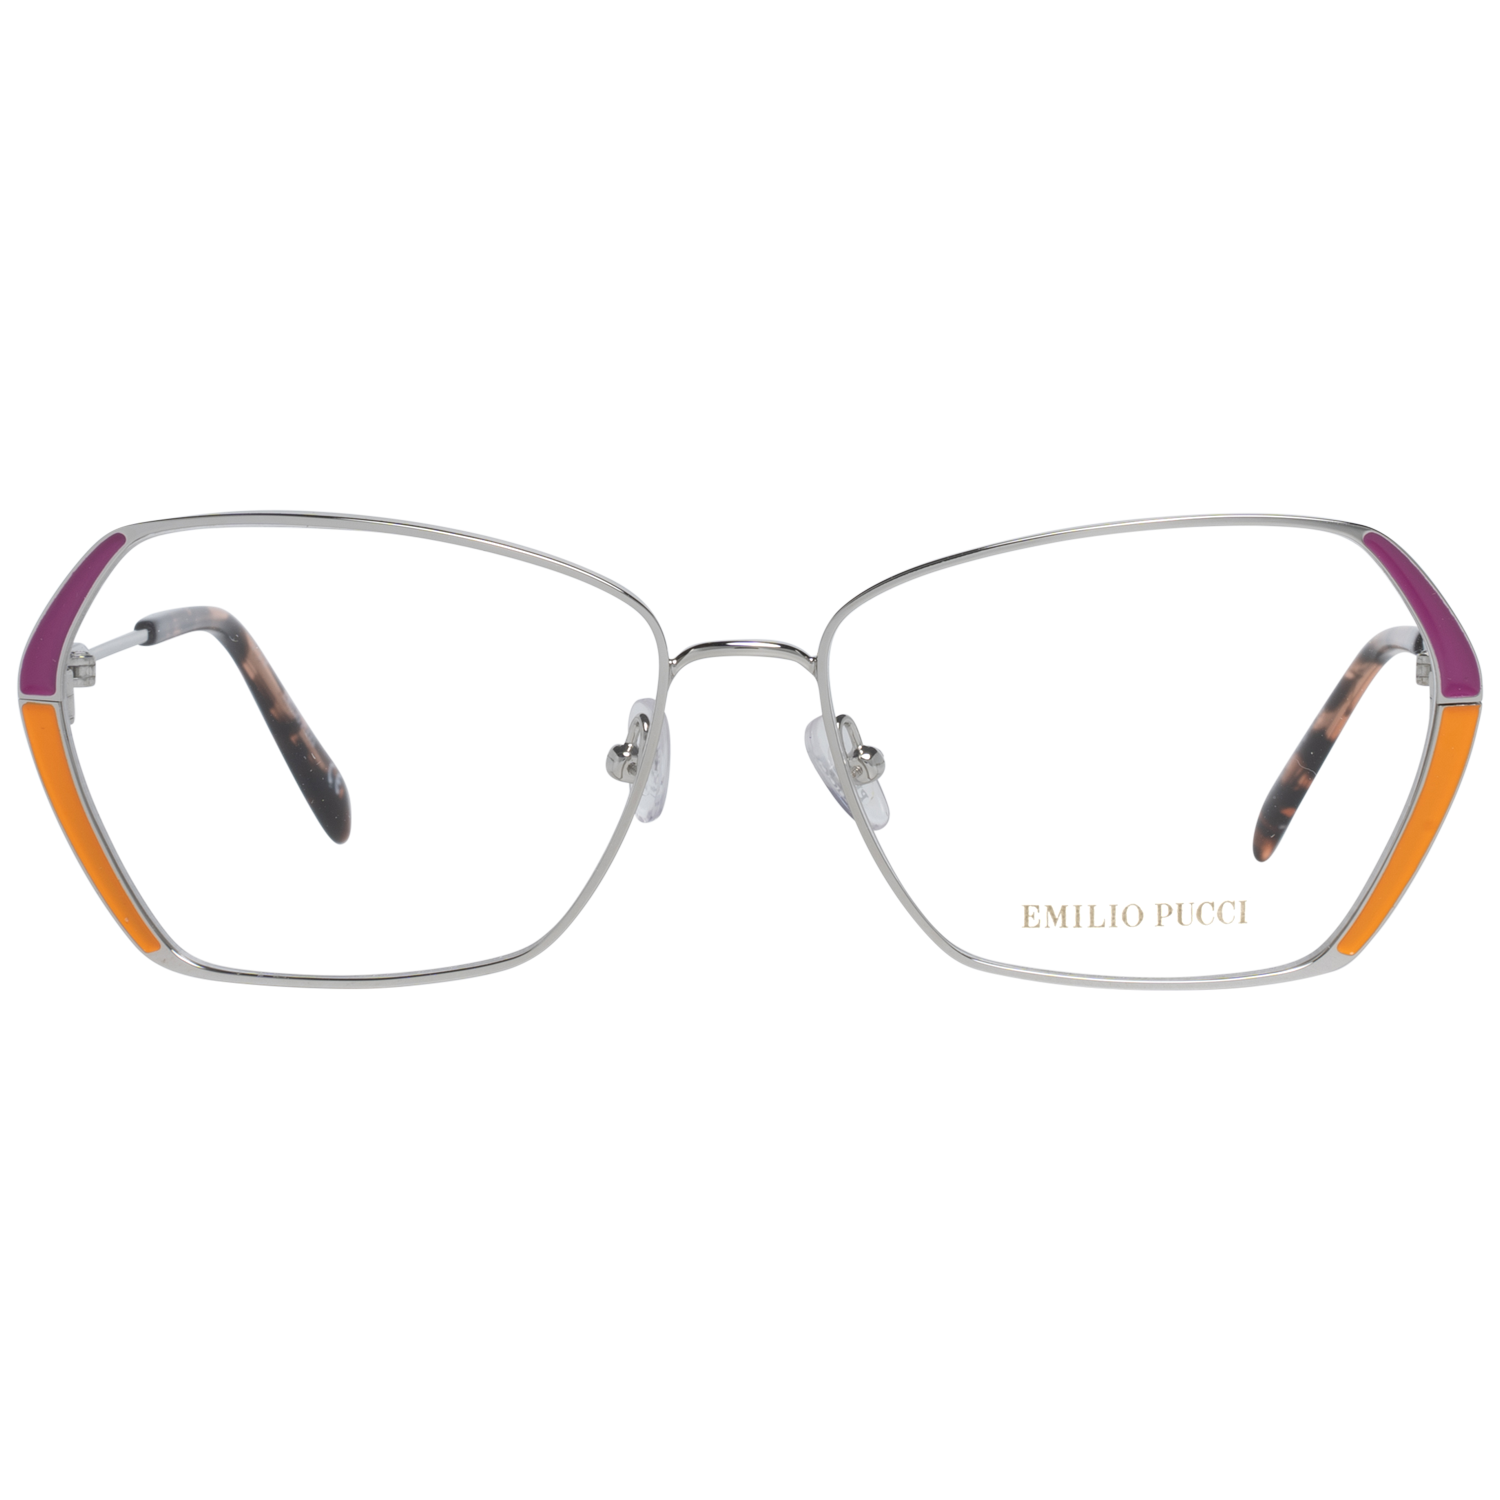 Emilio Pucci Frames Emilio Pucci Optical Frame EP5138 020 57 Eyeglasses Eyewear UK USA Australia 